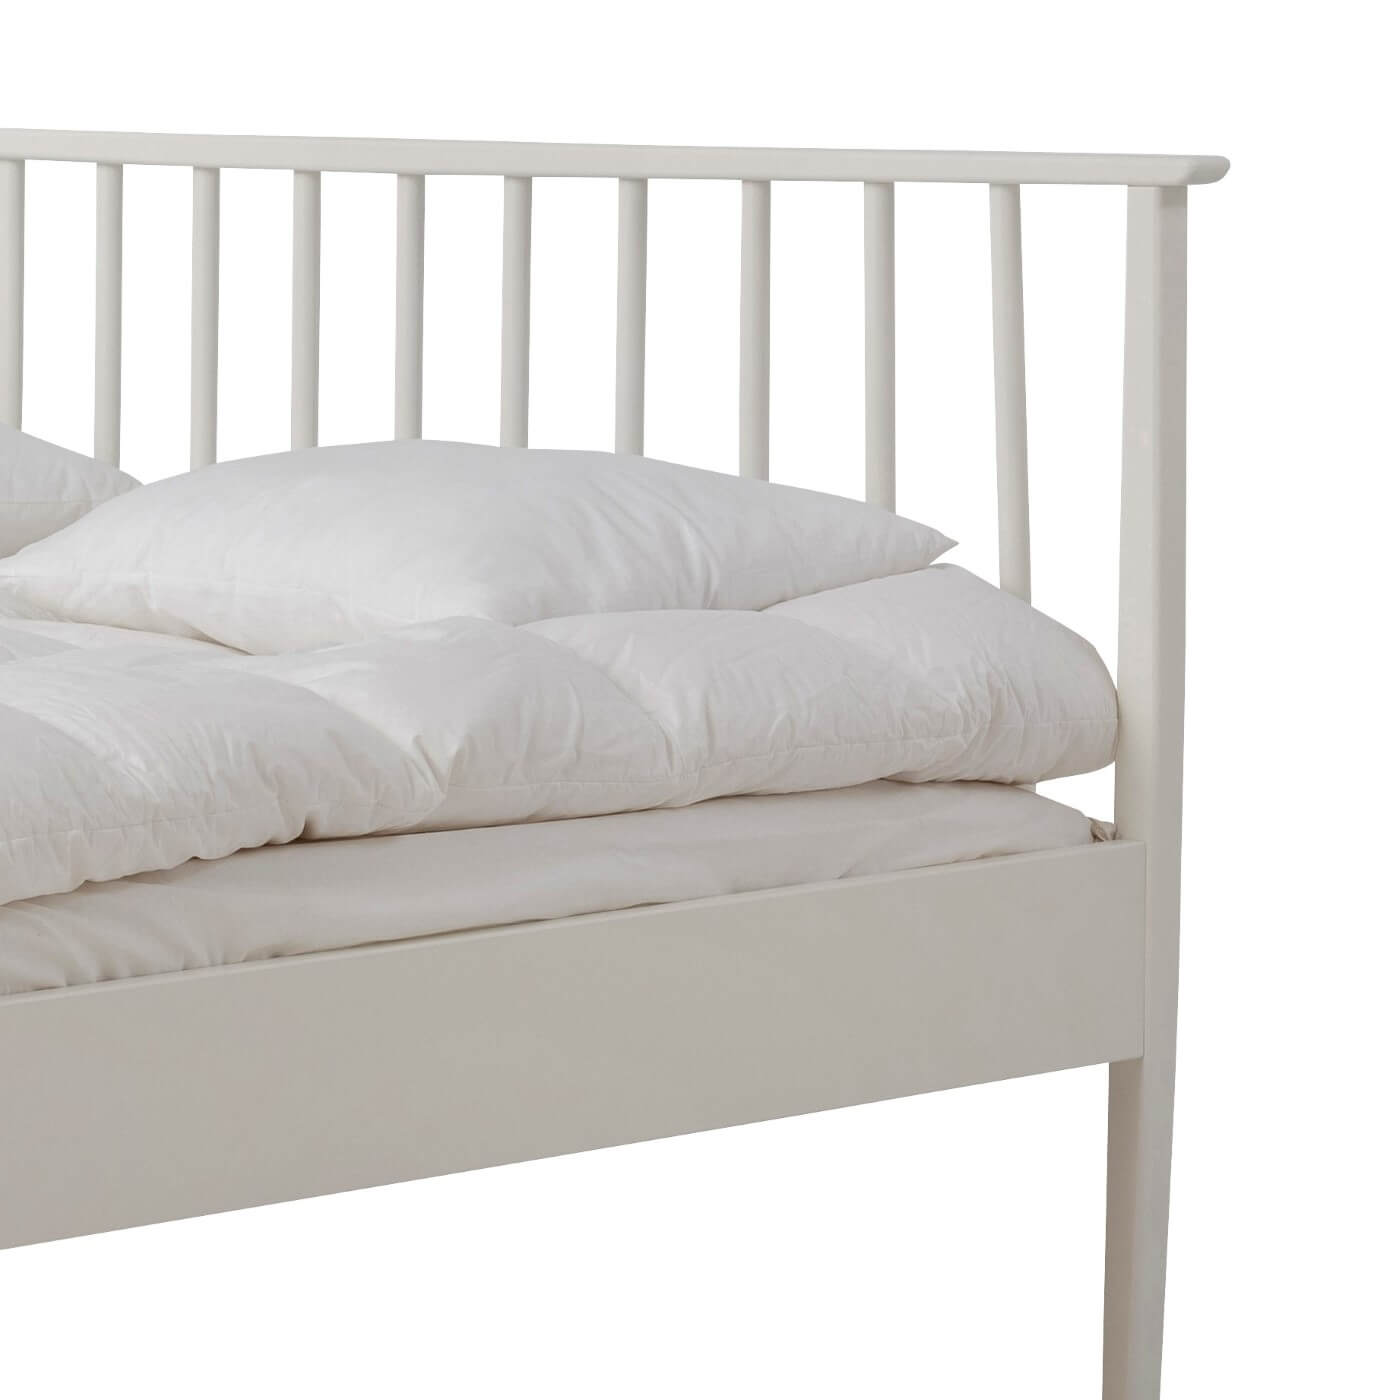 Białe łóżko drewniane nowoczesne NOEL. Widok pięknego ażurowego wysokiego zagłówka z drewna brzozy skandynawskiej lakierowanej na kolor biały mat. Skandynawski design